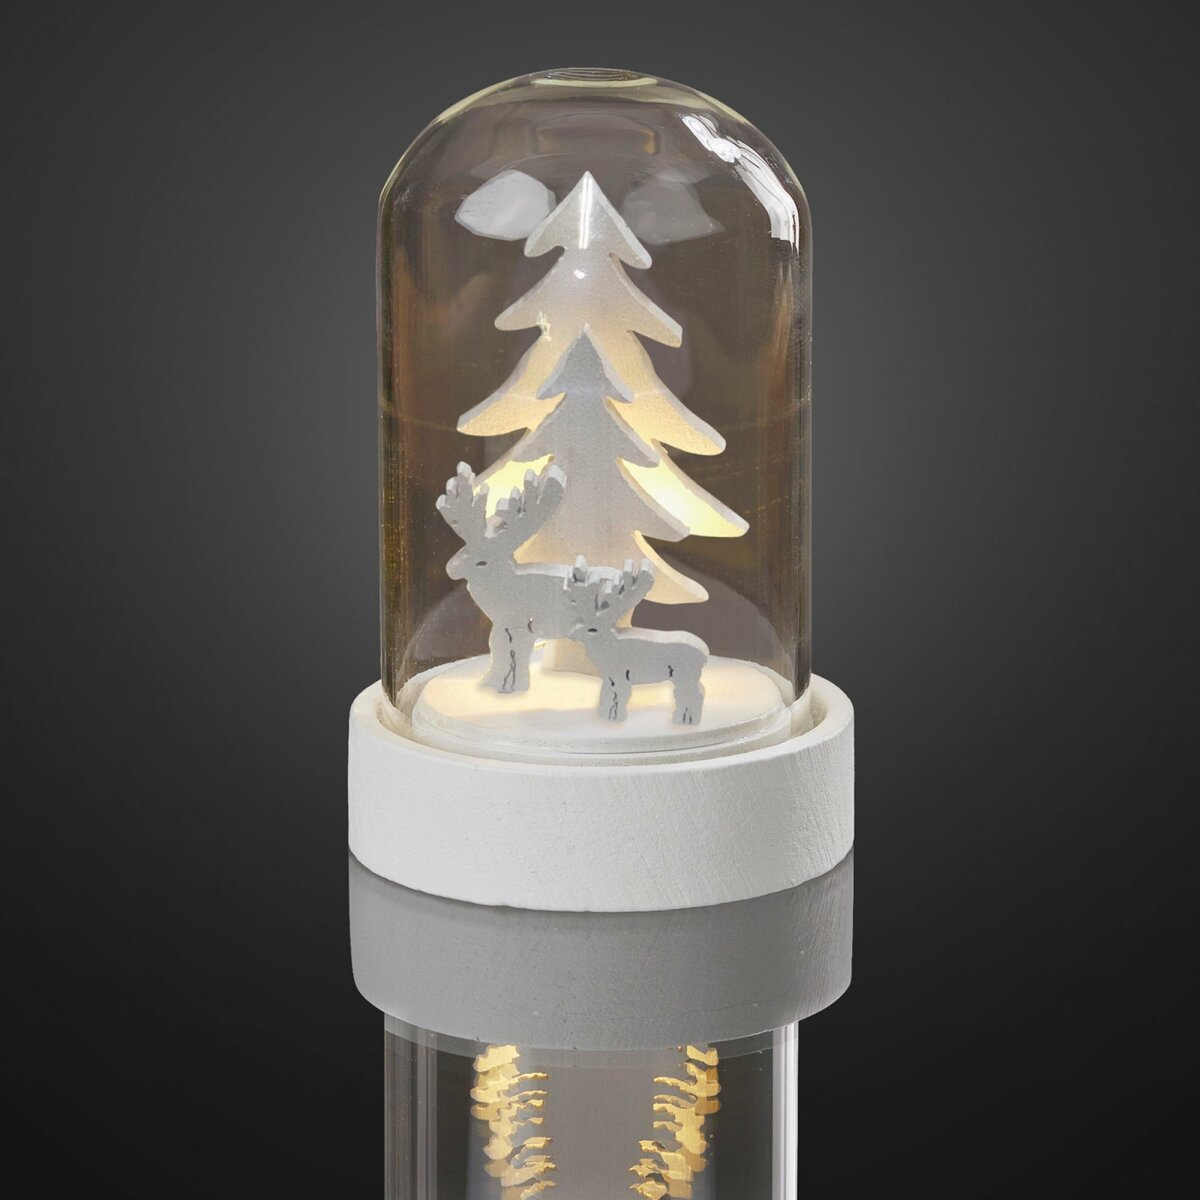 LED-Deko-Glocke mit Tannenbäumen LEDs, batt und Rentieren, warm-weiße